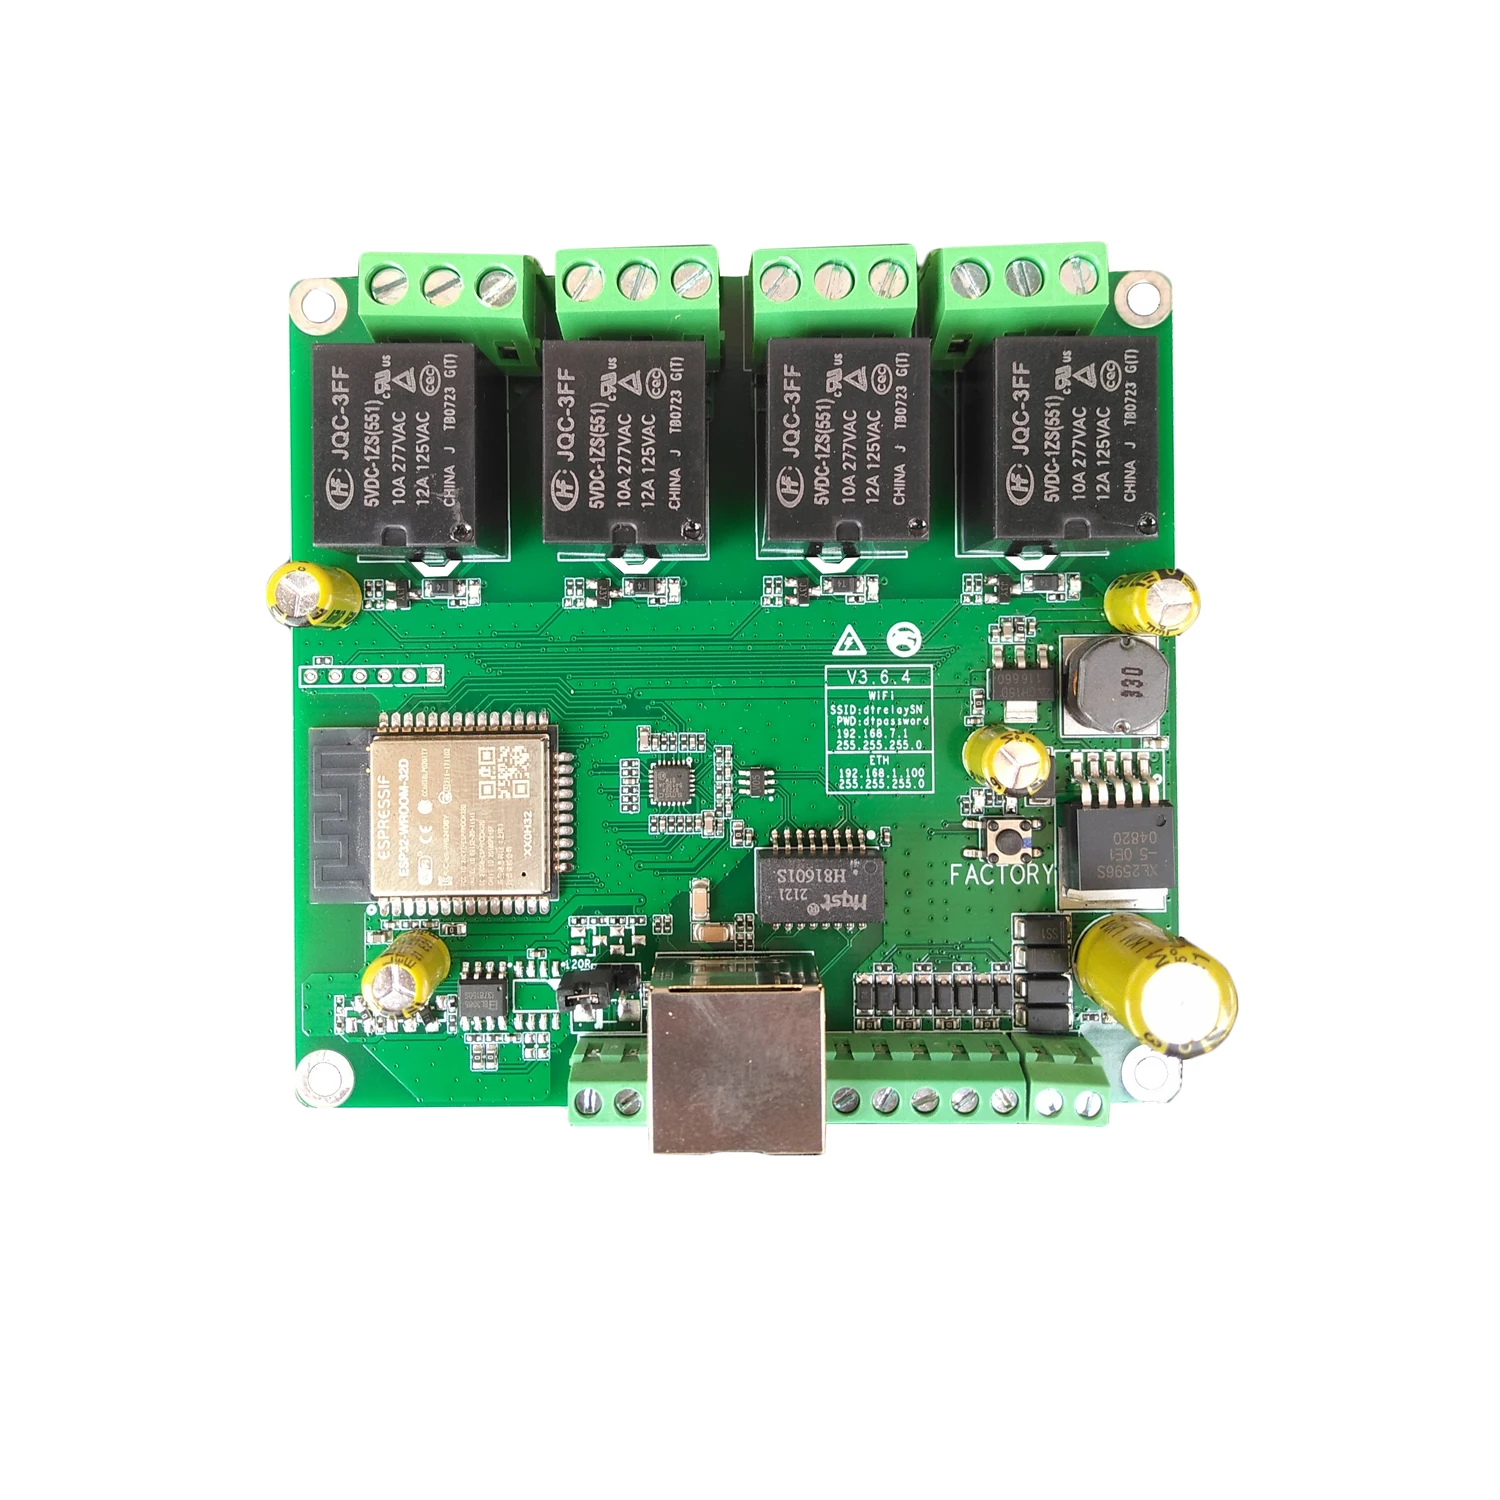 Tanio DTWONDER inteligentny włącznik WiFi ESP32 Ethernet tablica przekaźnikowa domoticzem sklep